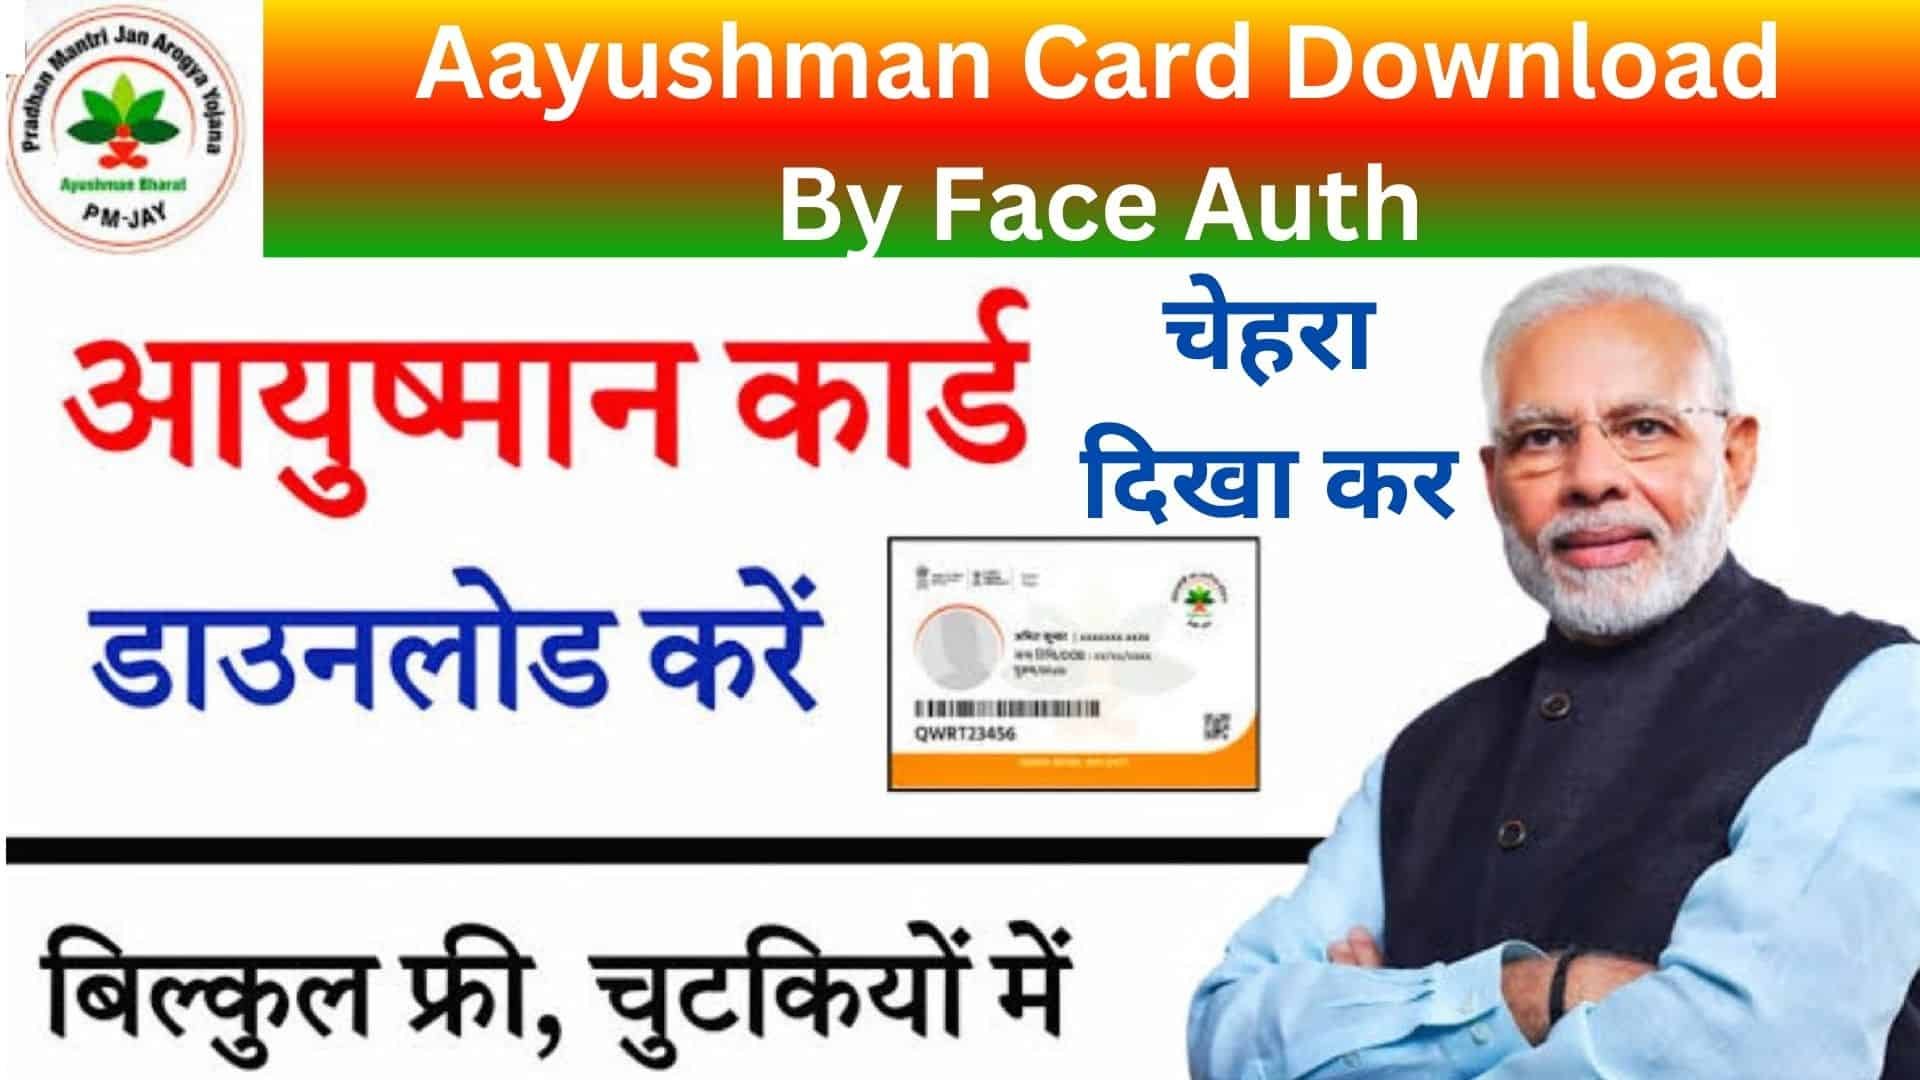 Aayushman Card Download By Face Auth : अब चेहरा दिखा कर मोबाइल में कर सकते हैं आयुष्मान कार्ड डाउनलोड , ये है आसान स्टेप्स